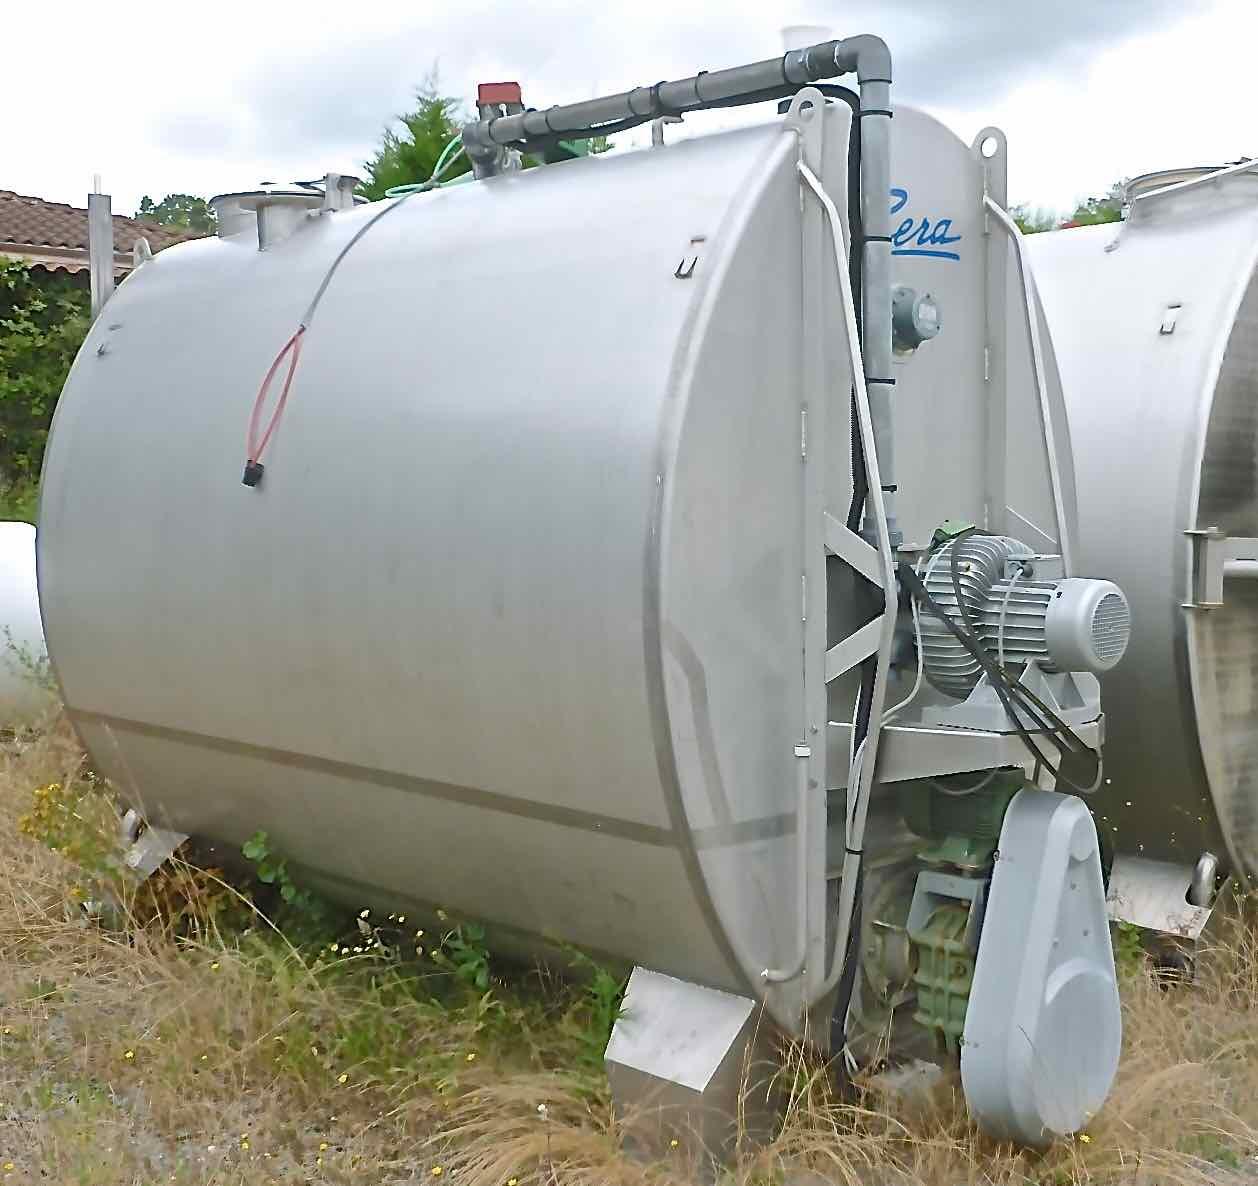 Cuve ELITE de 70 hecto (7000 litres) - Marque : PERA